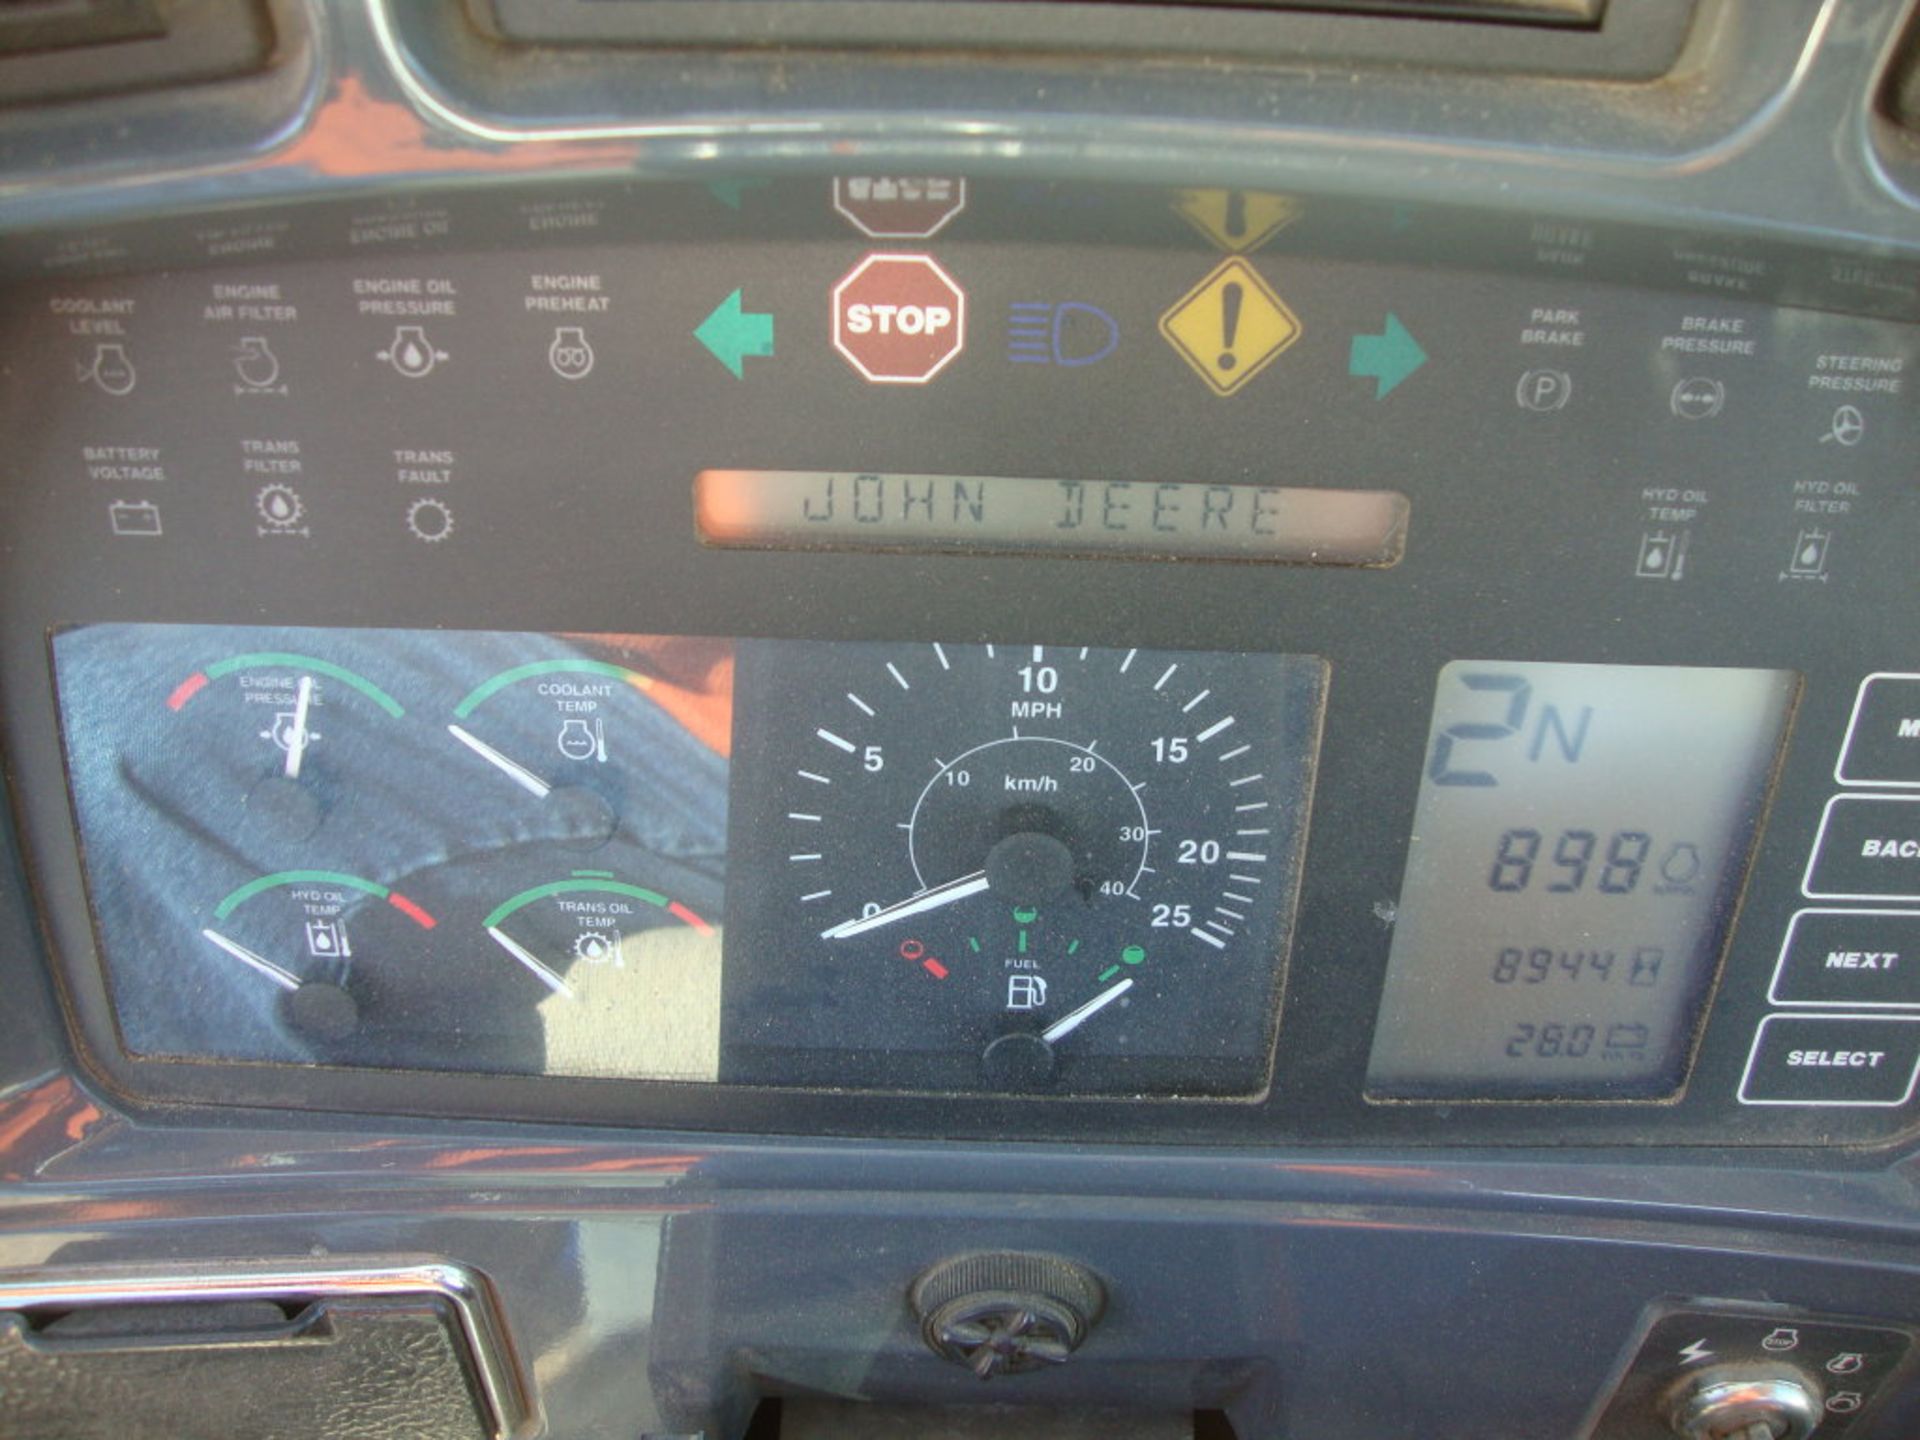 2003 JD 544H wheel loader - Image 3 of 4